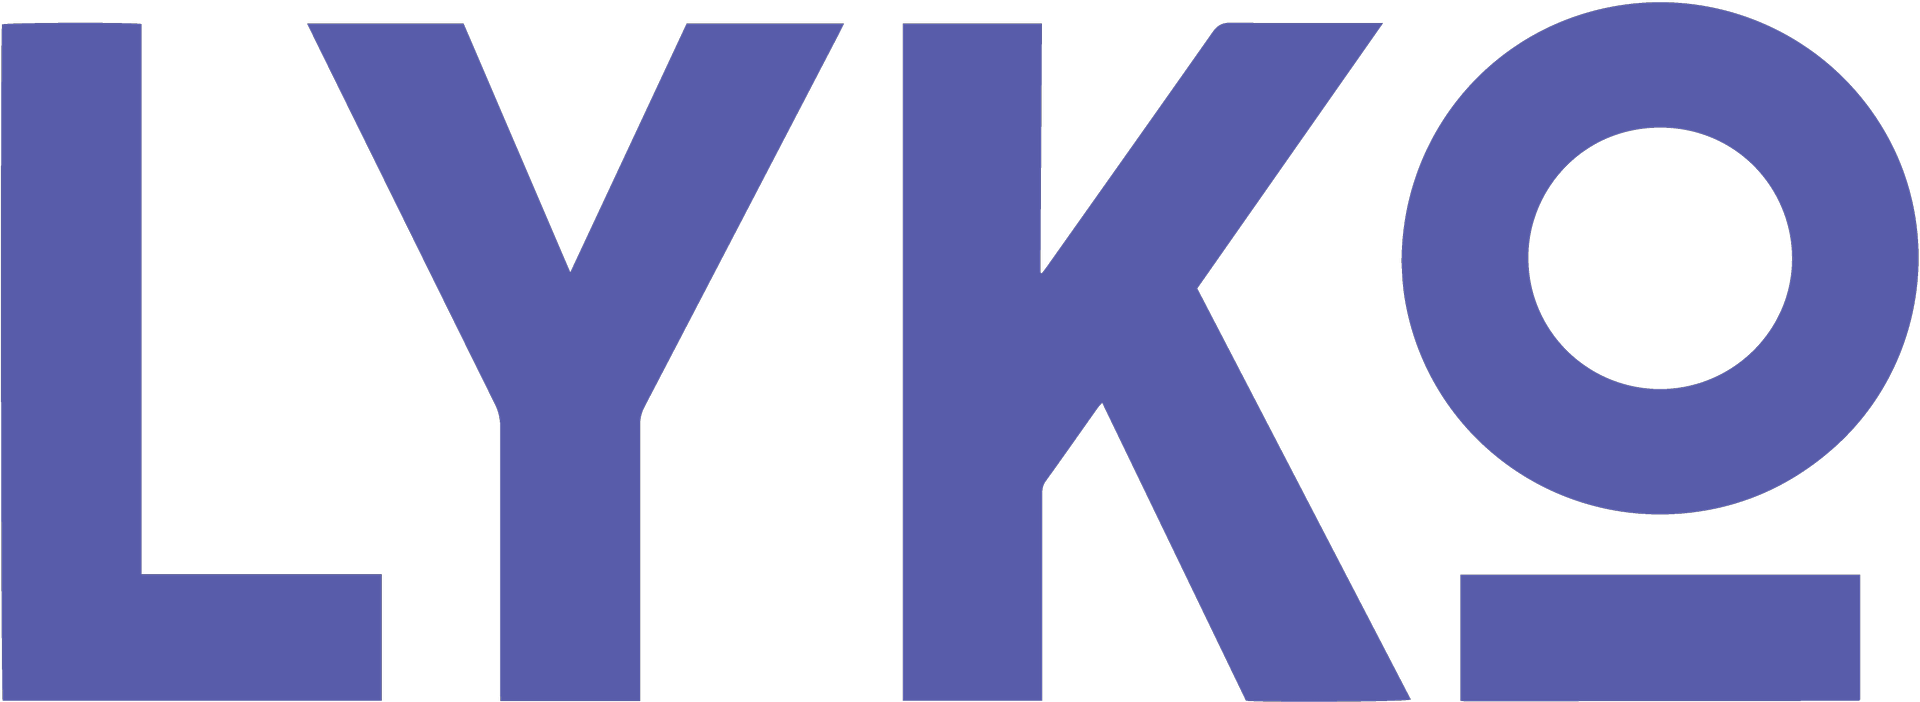 Company logo for Lyko